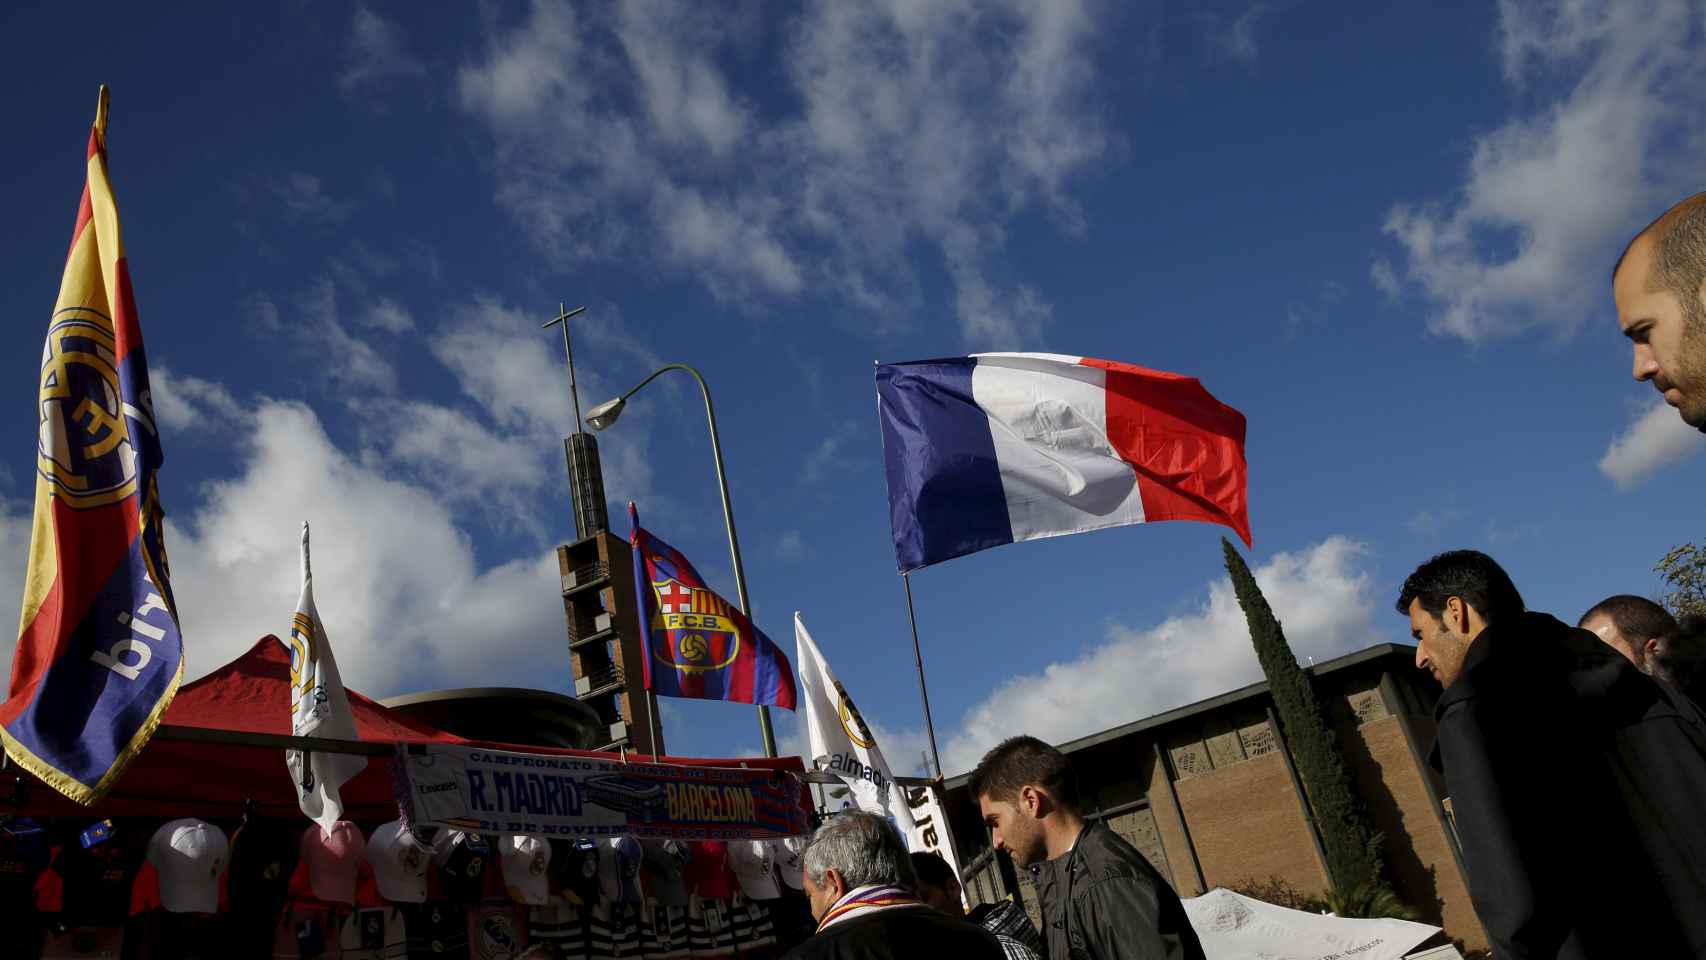 La bandera francesa ondea en uno de los puestos colocados junto al estadio.